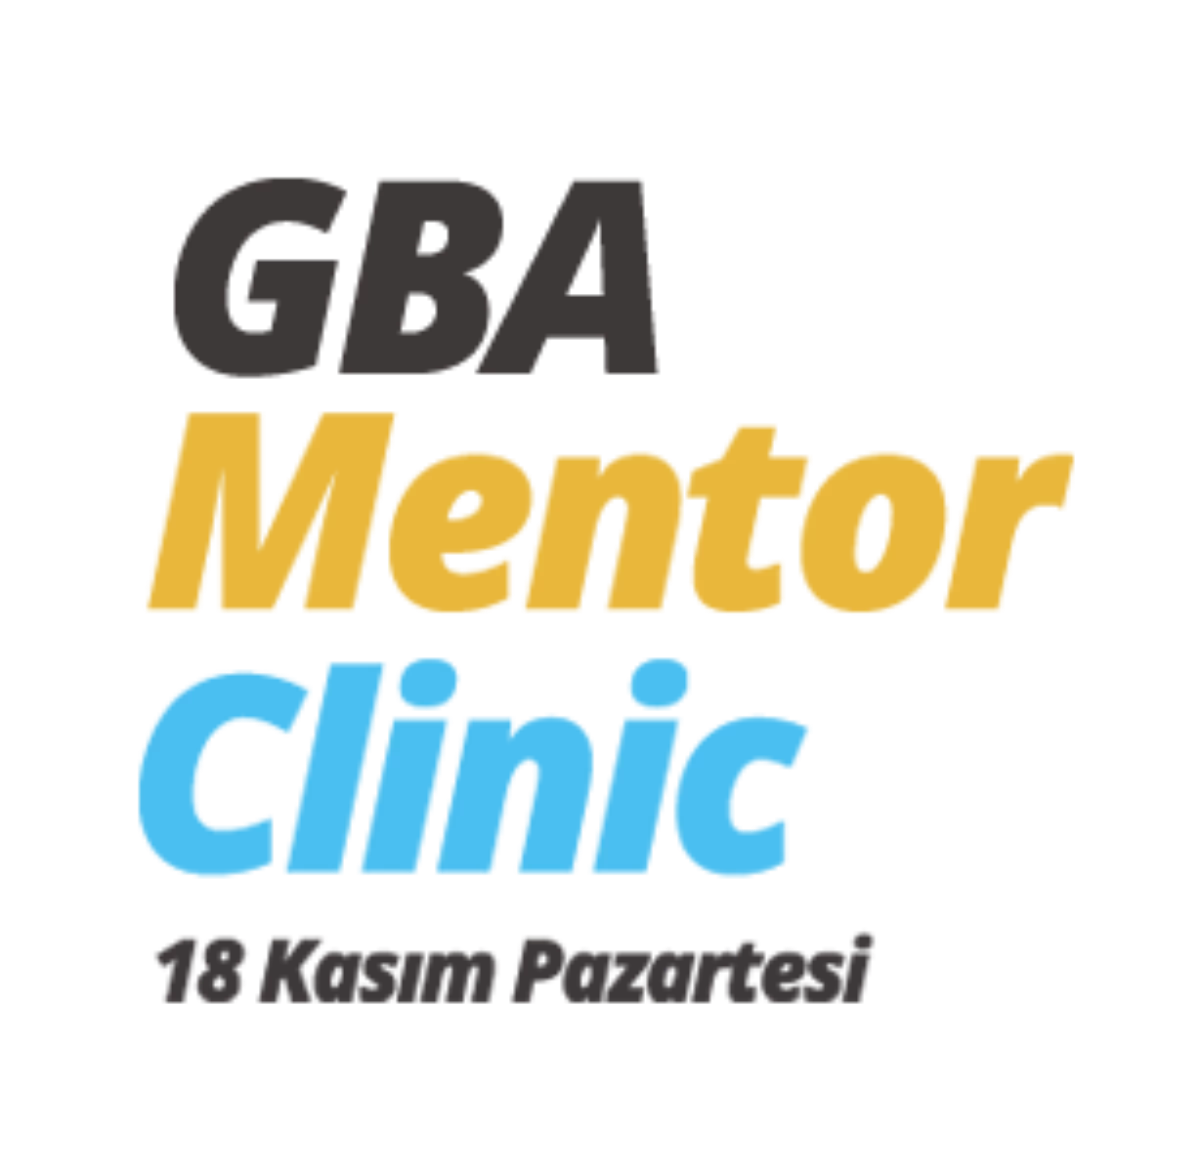 Gba, Mentor Clinic ile Girişimcilere Yol Gösterecek